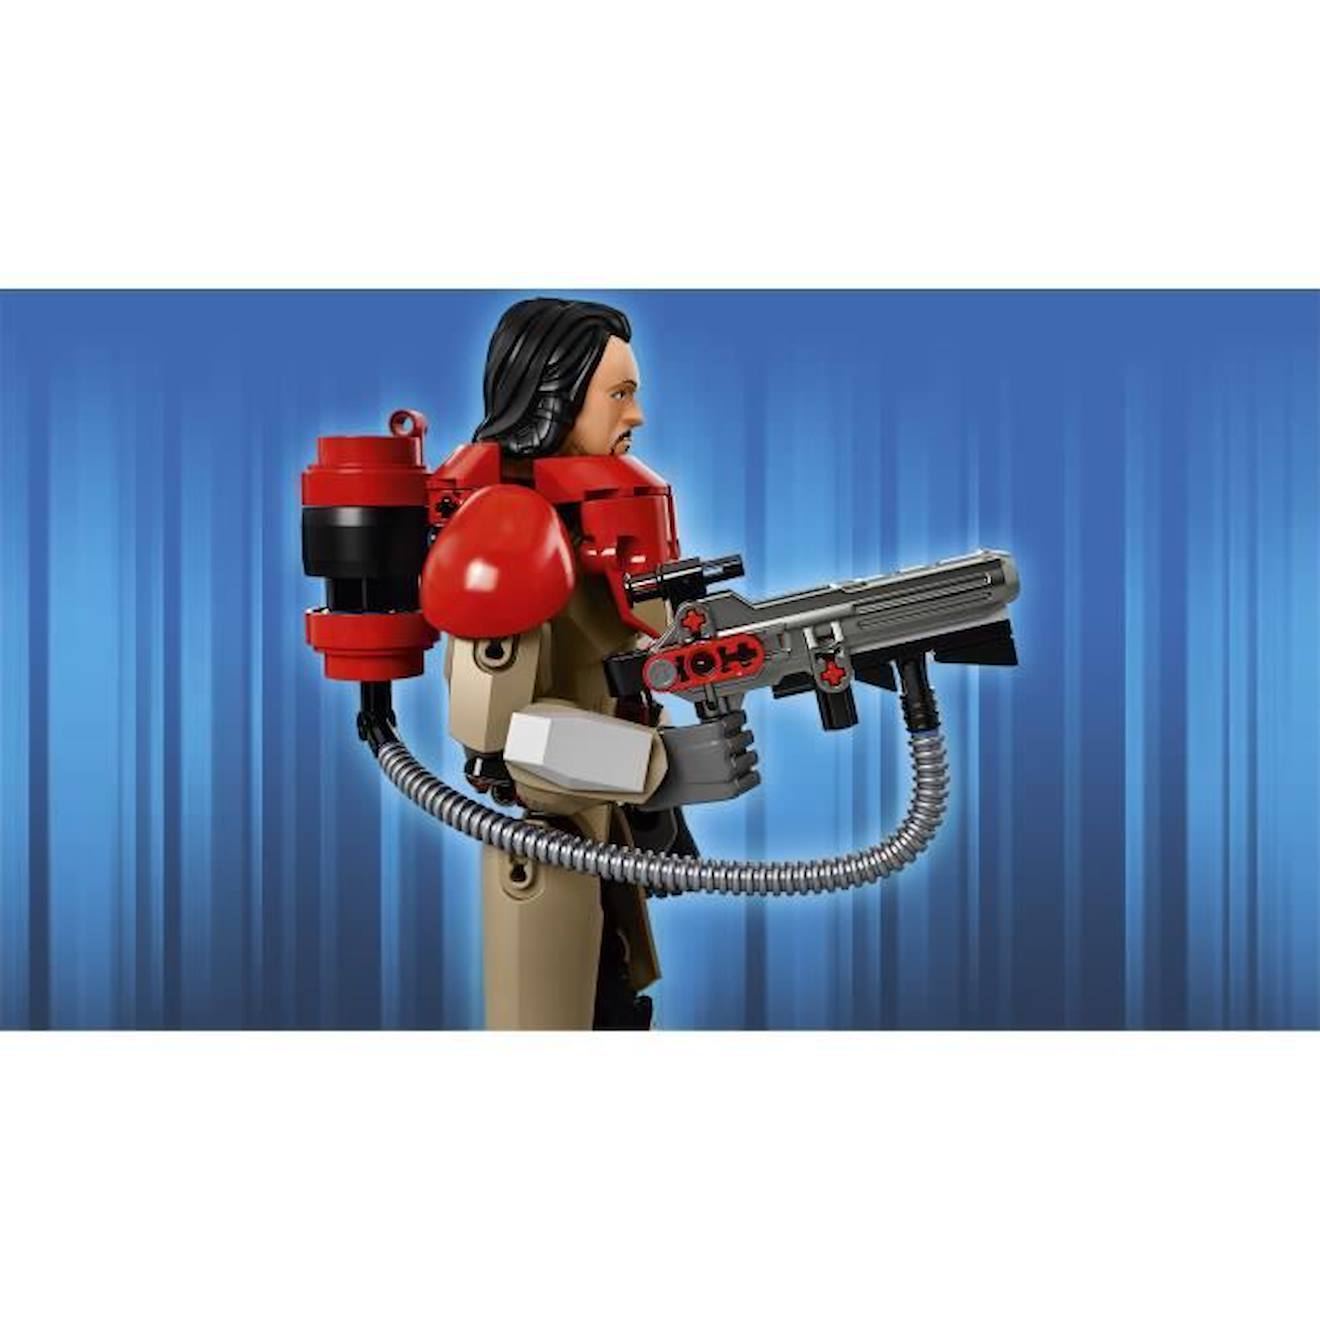 LEGO® Star Wars 75525 Baze Malbus™ rouge - Lego